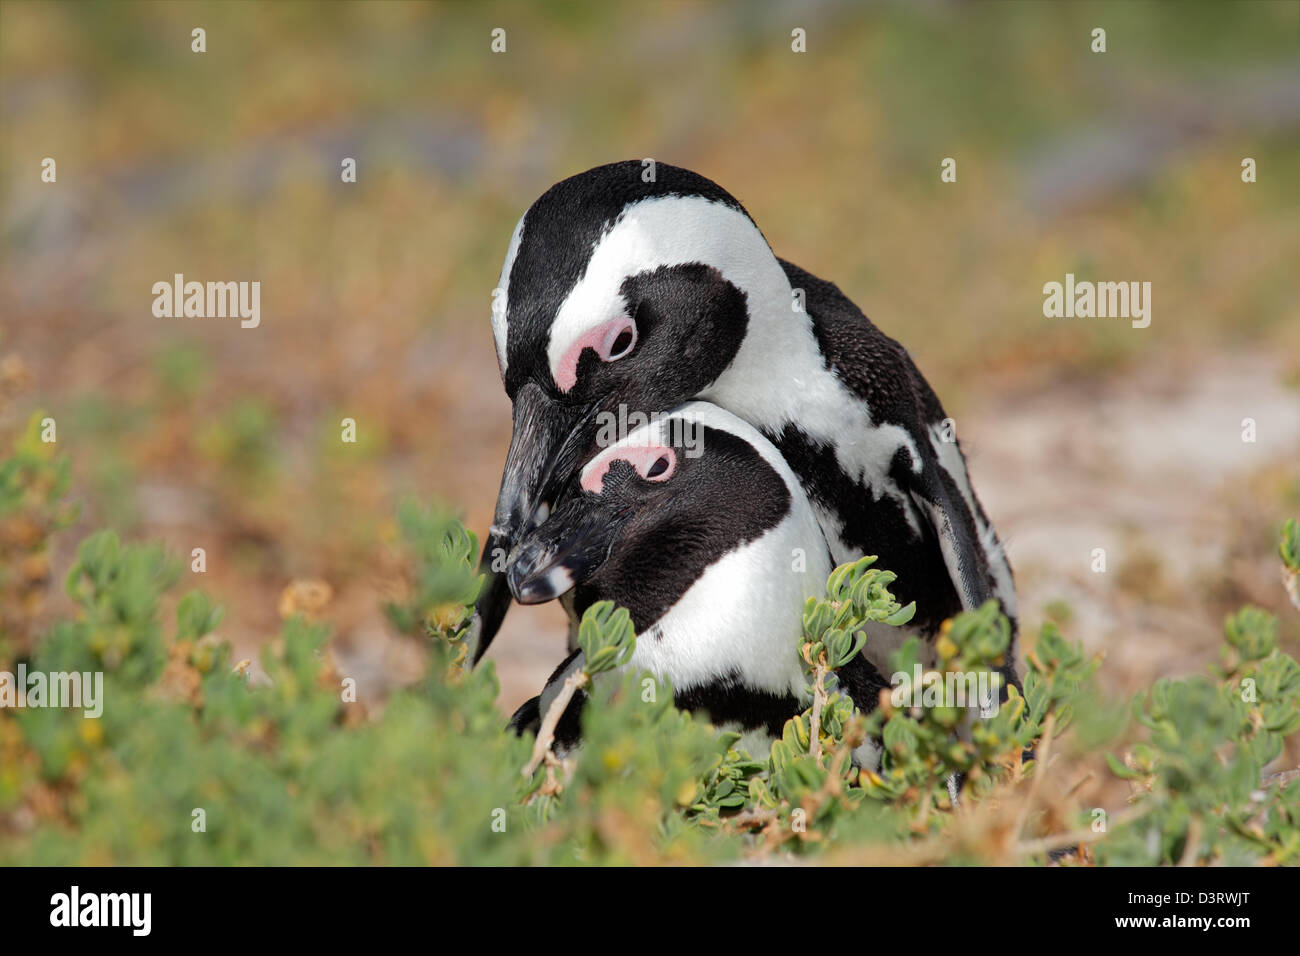 Paar der afrikanischen Pinguine (Spheniscus Demersus), Western Cape, Südafrika Stockfoto